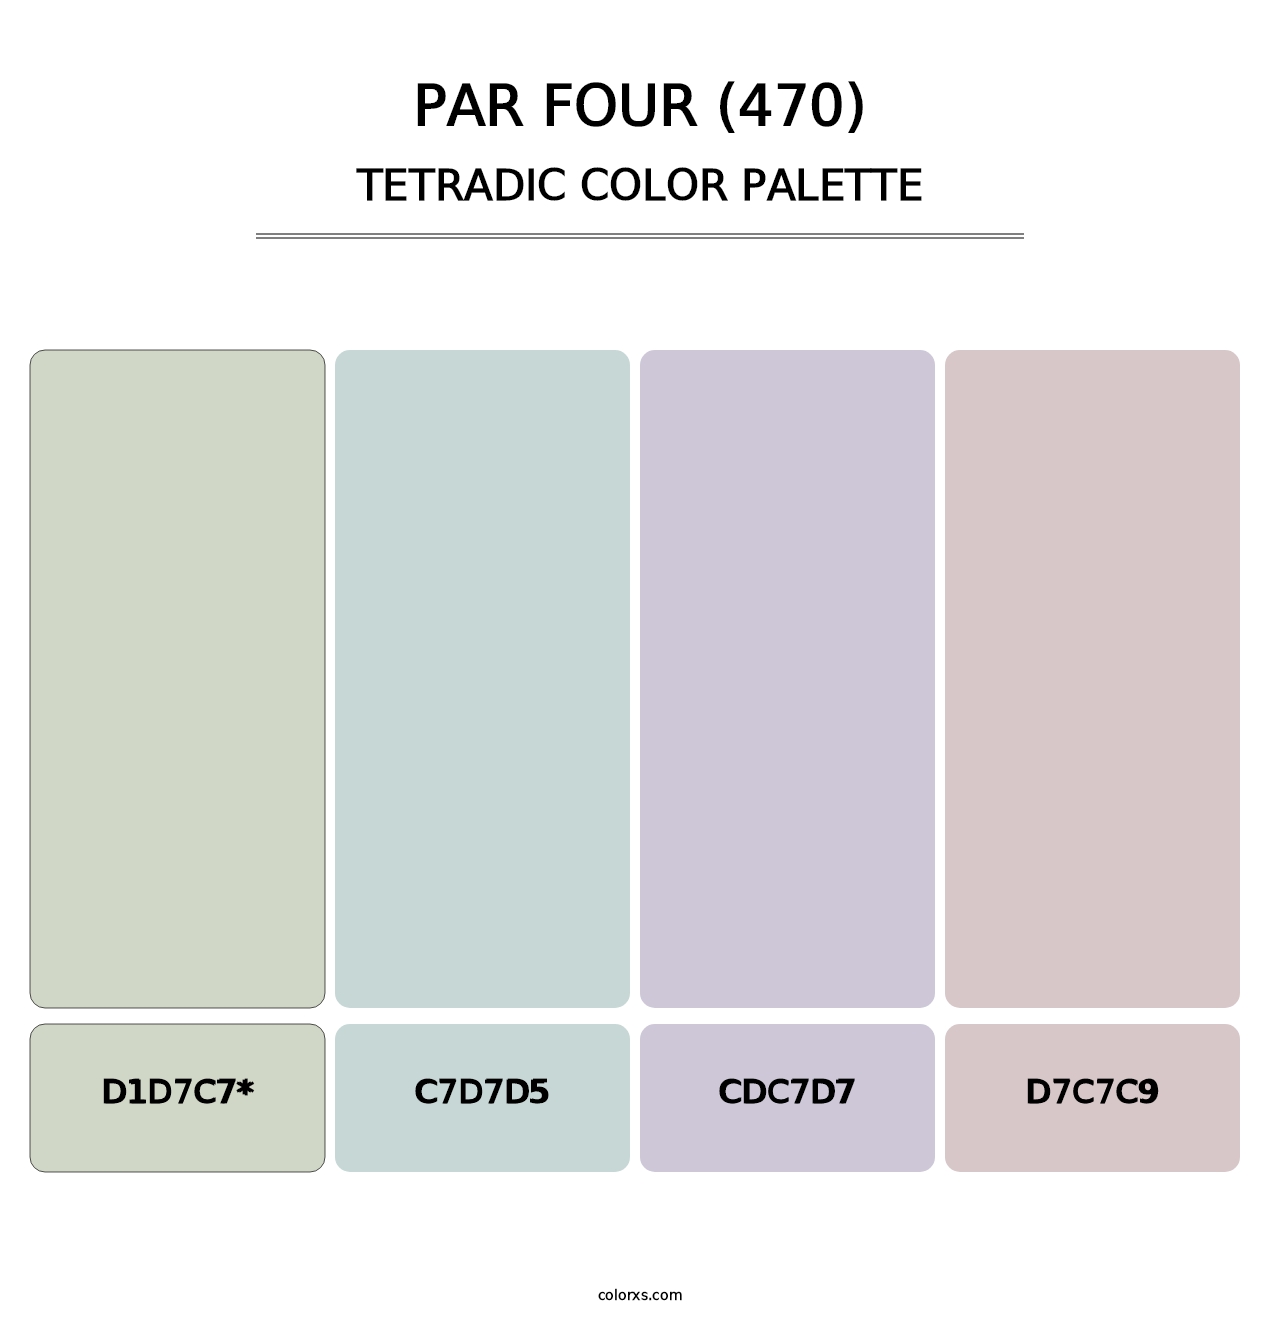 Par Four (470) - Tetradic Color Palette